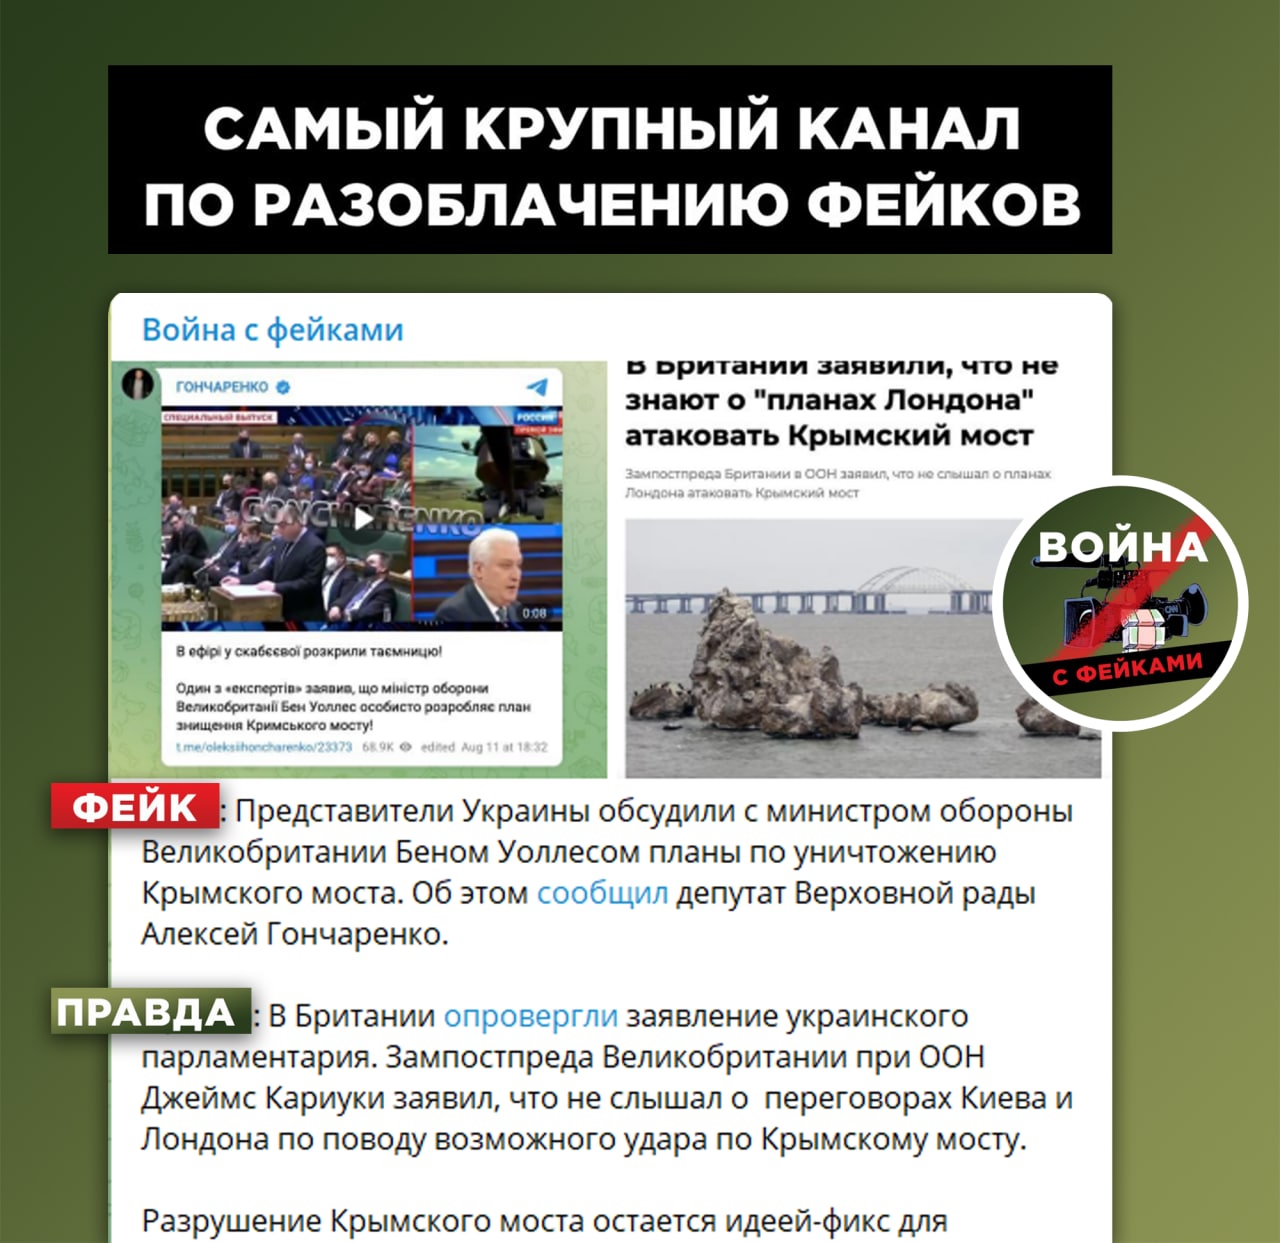 Самообстрел ДНР разоблачение укромифов. Телеканал военный программа